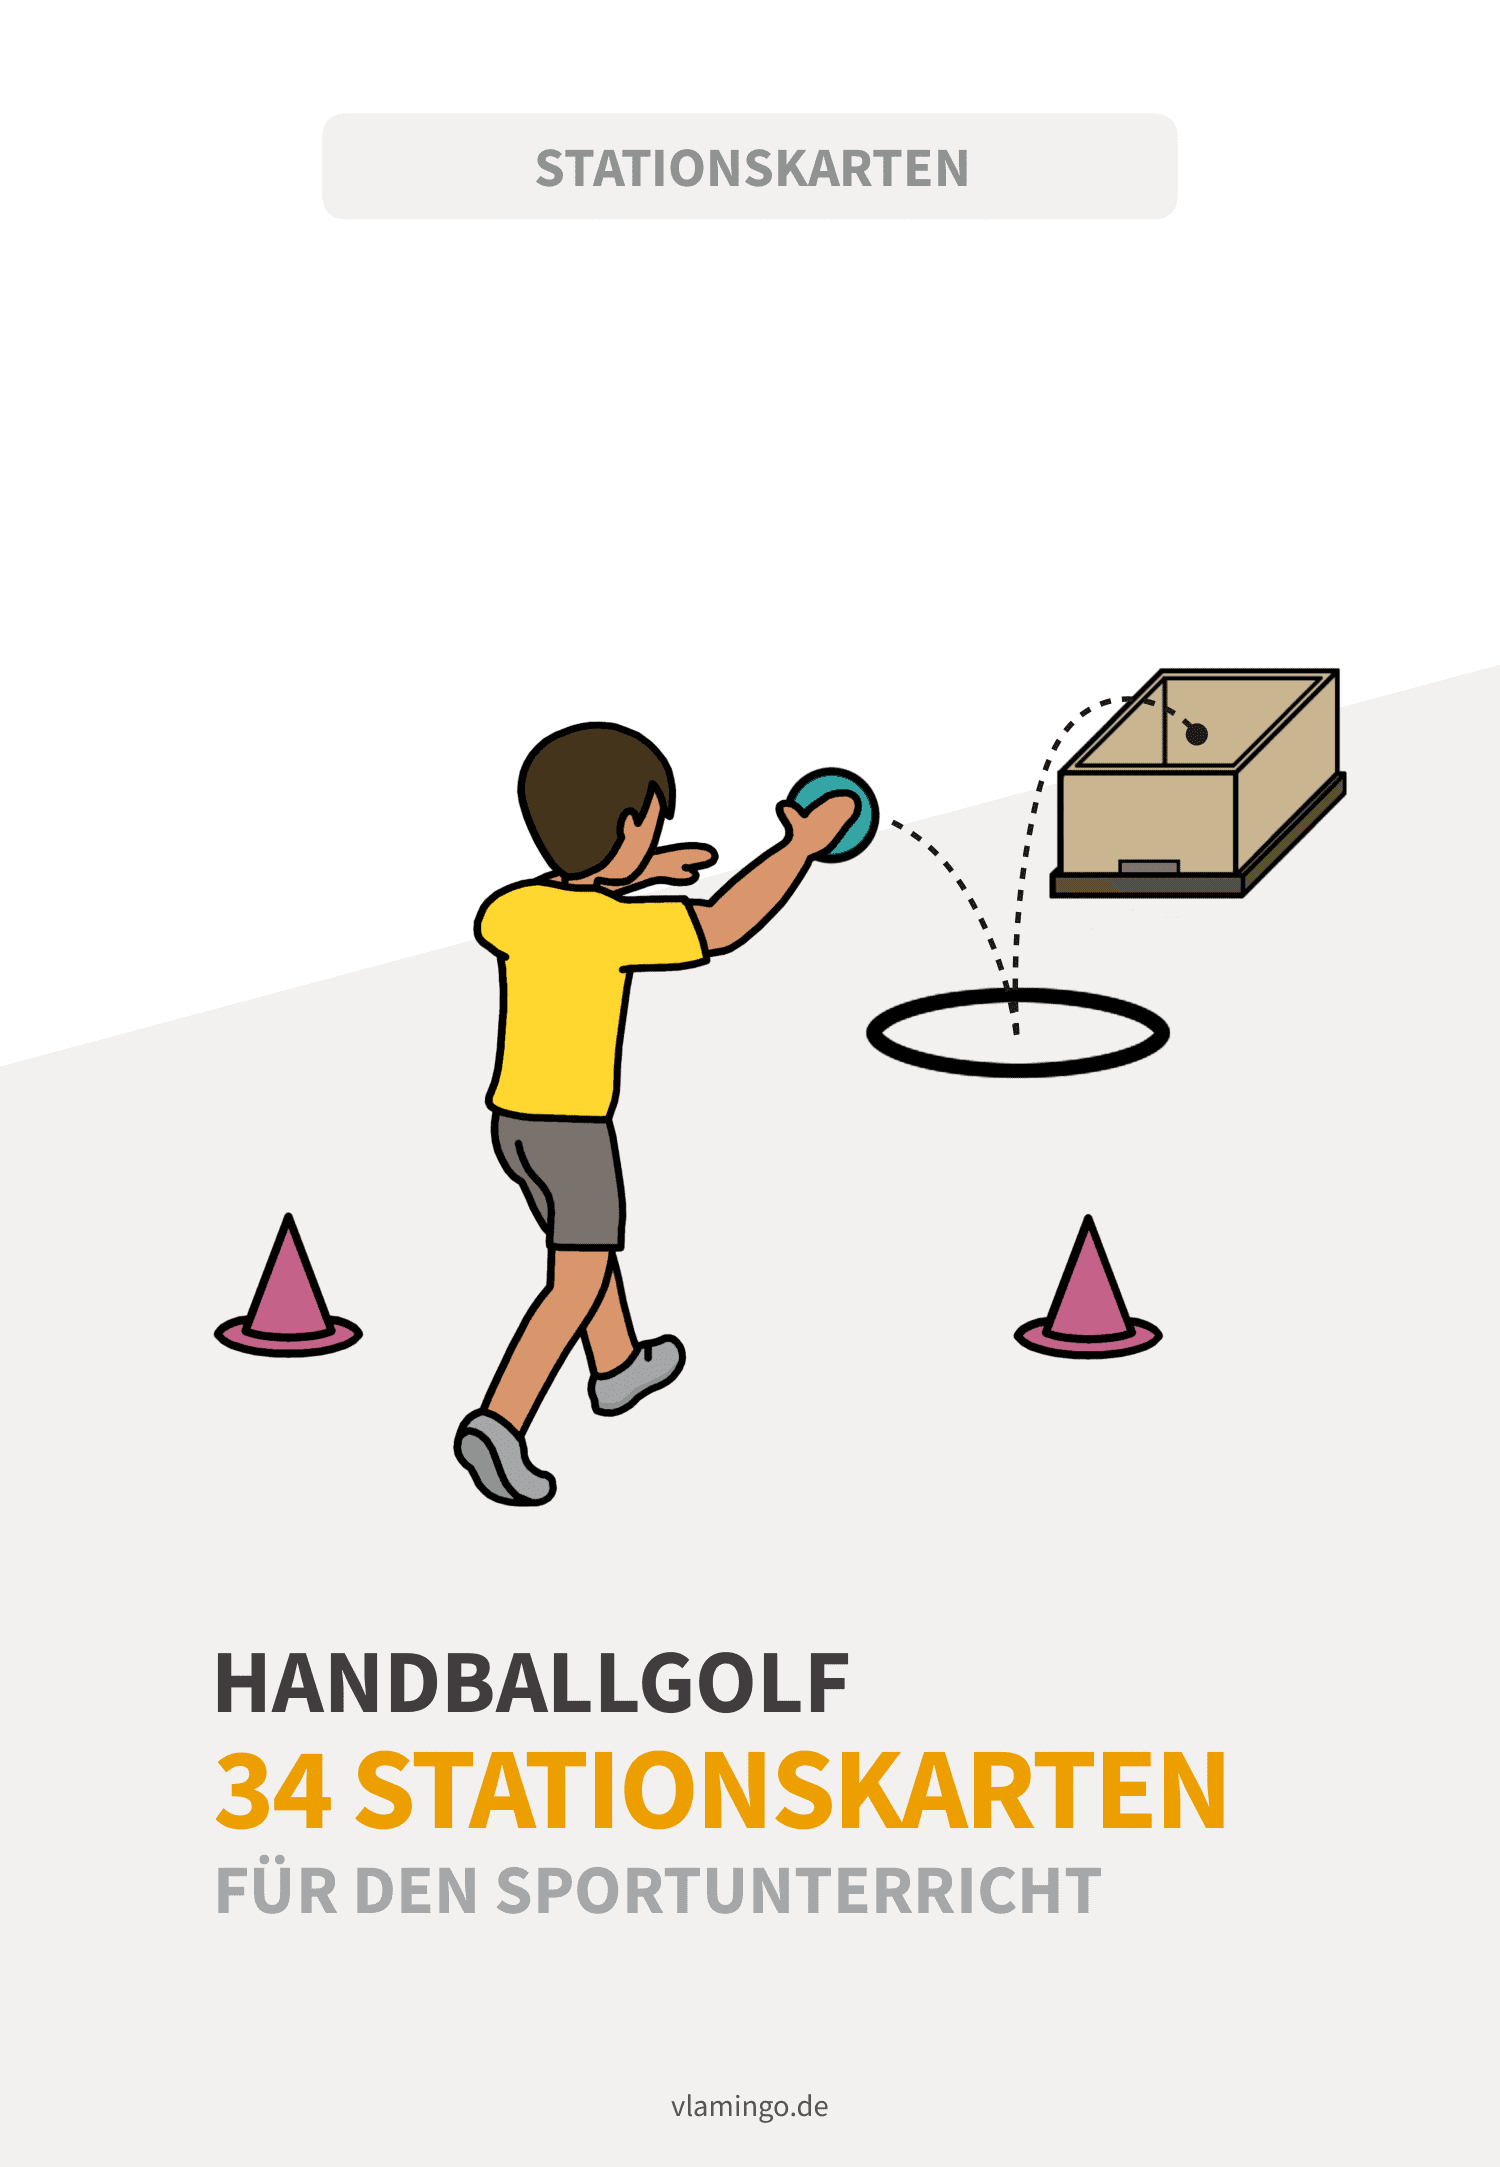 Handballfgolf - 34 Stationskarten für den Sportunterricht